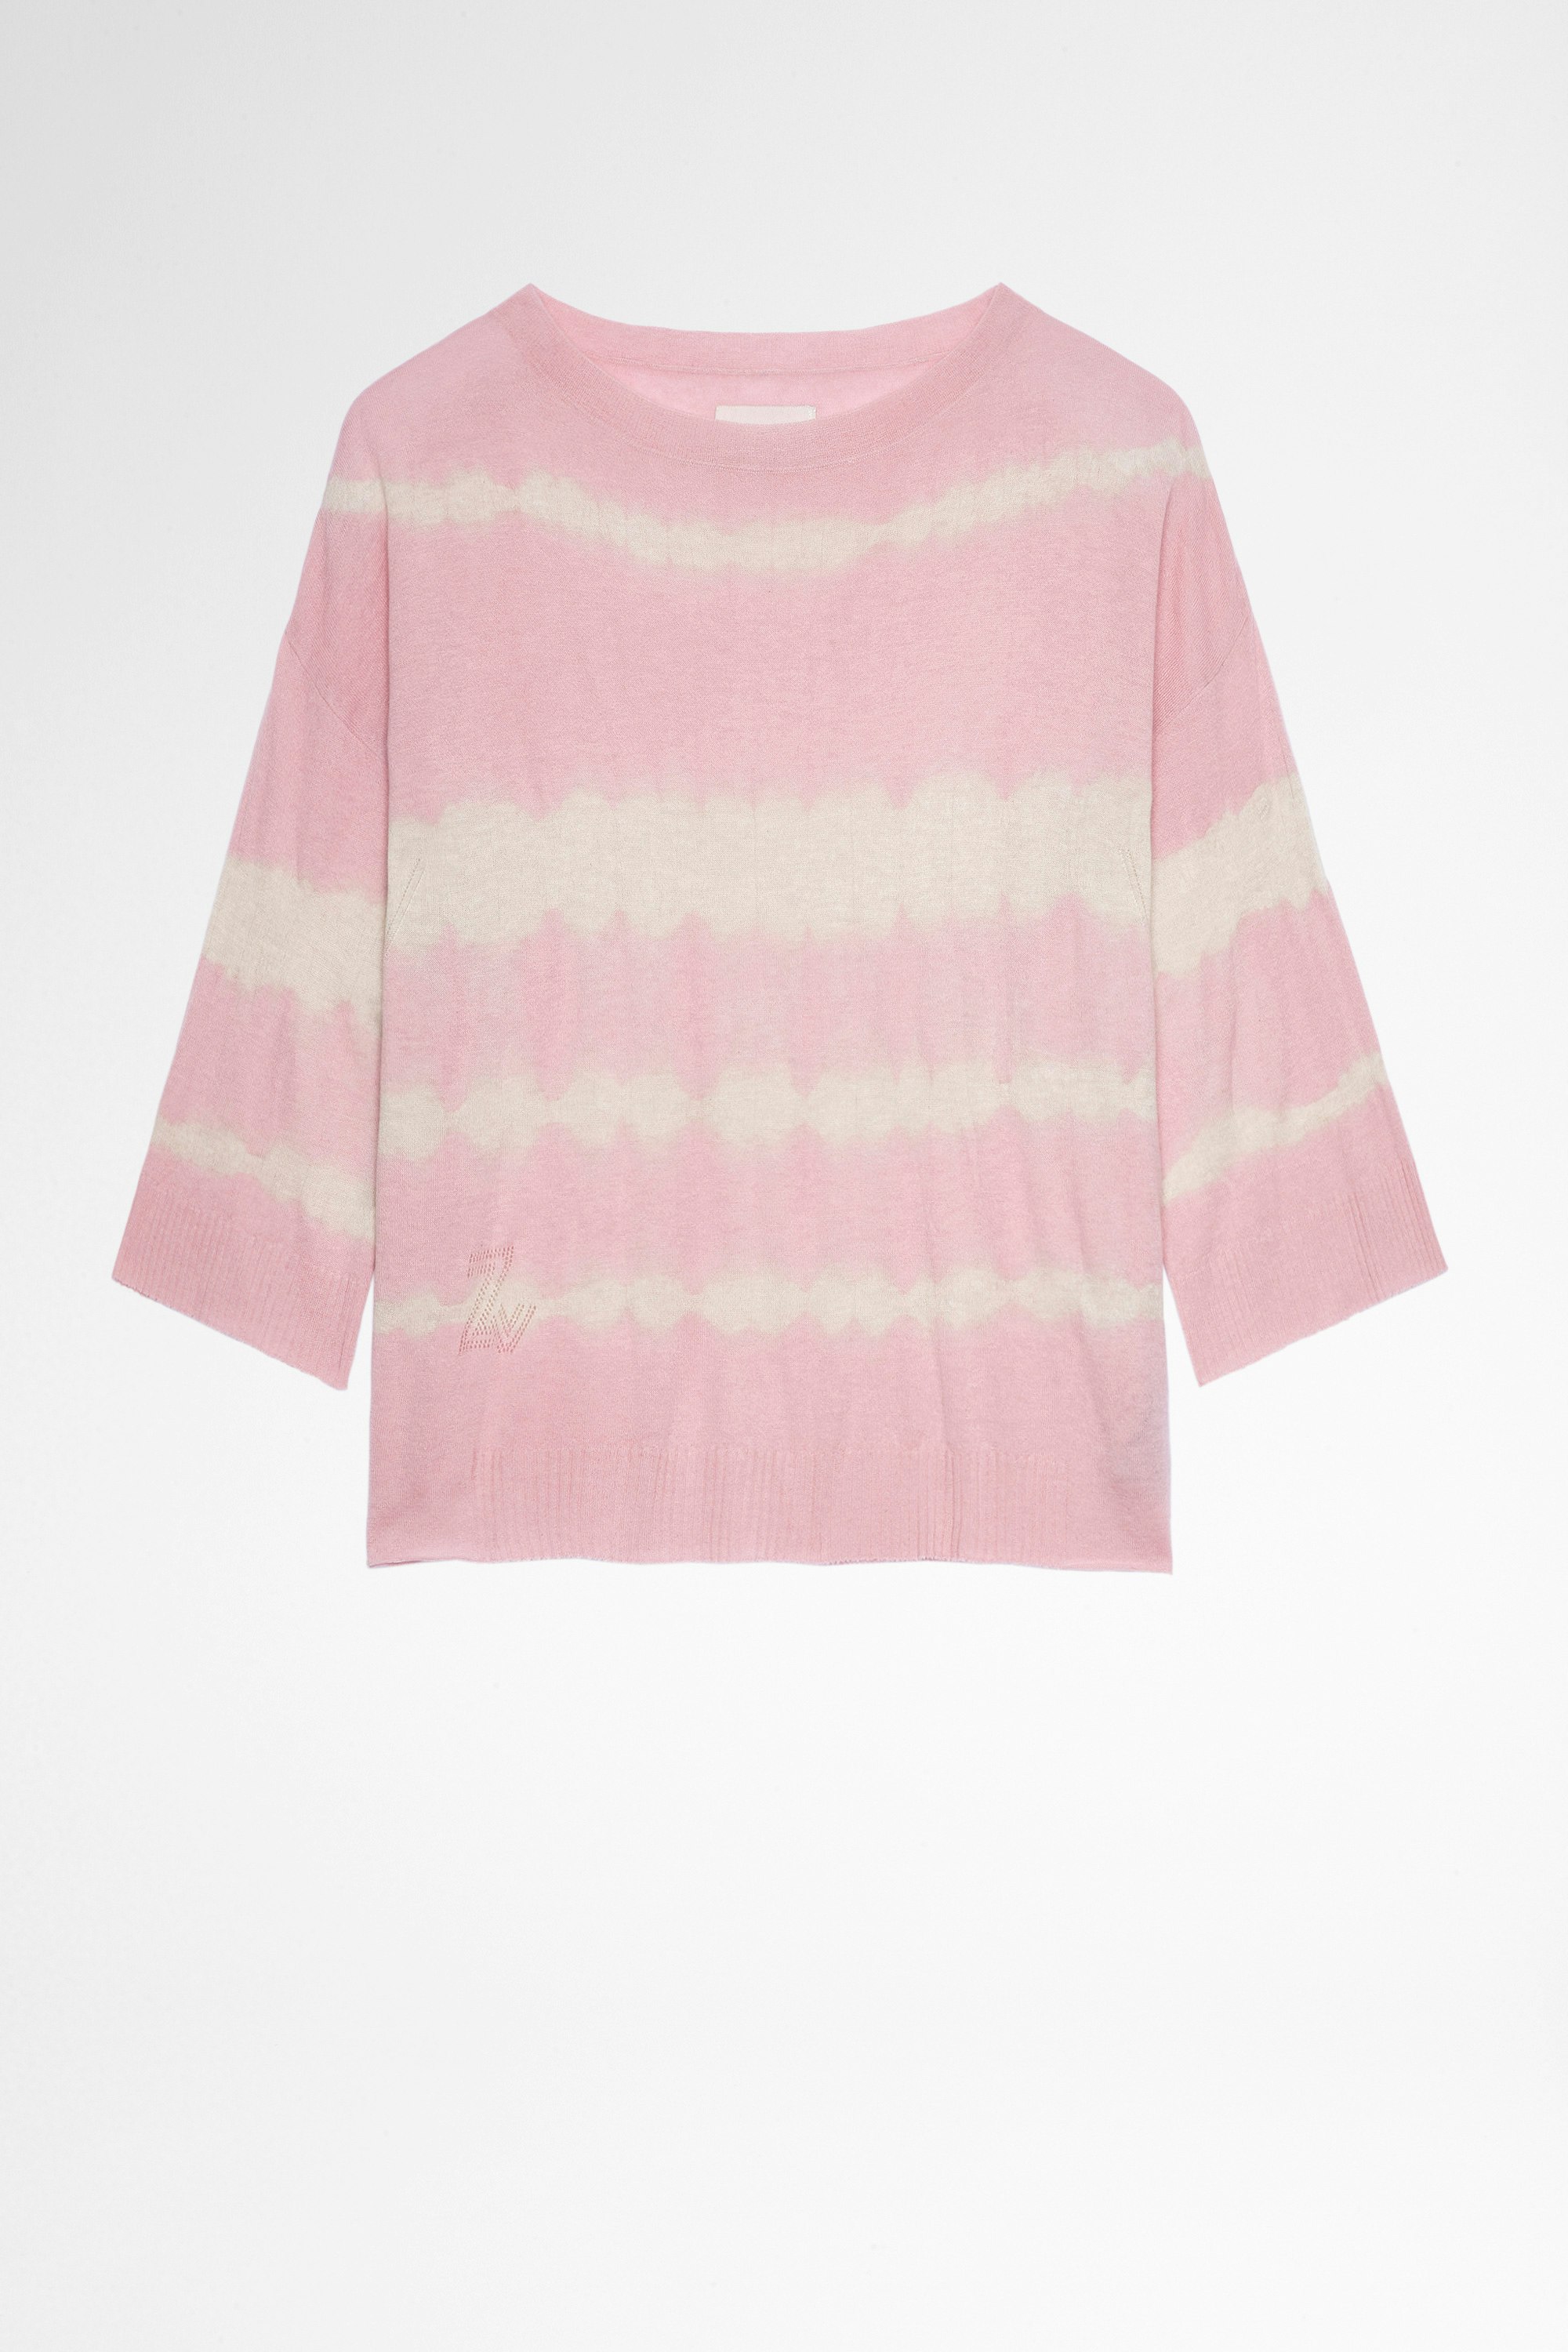 Flint ニット Women's pink merino wool jumper in tie&dye